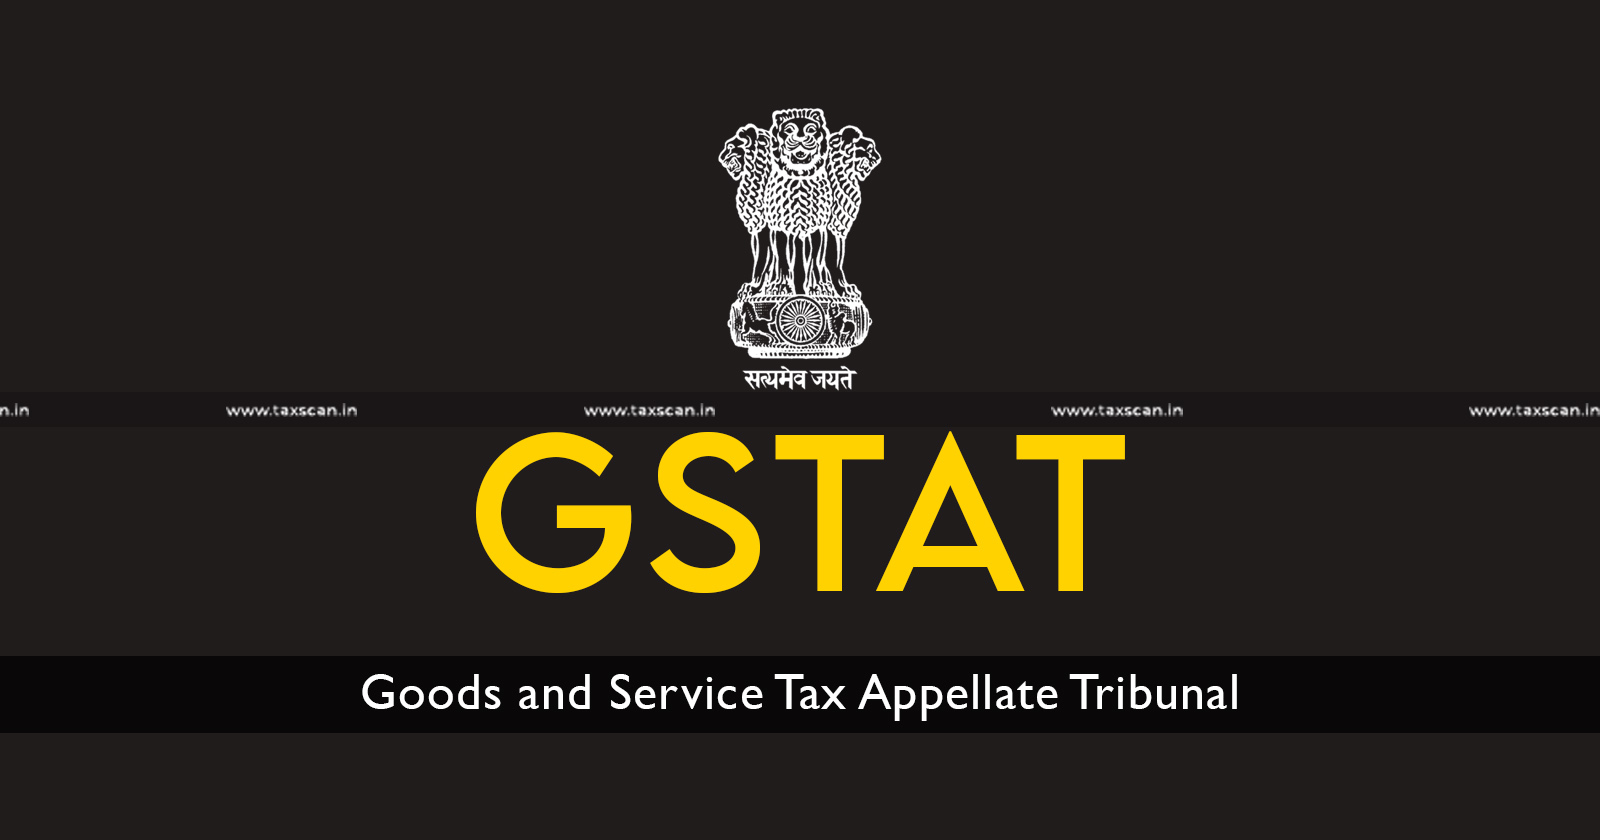 GST recovery - GST - recovery - GSTAT - GST recovery in Absence of GSTAT - Orissa High Court - taxscan